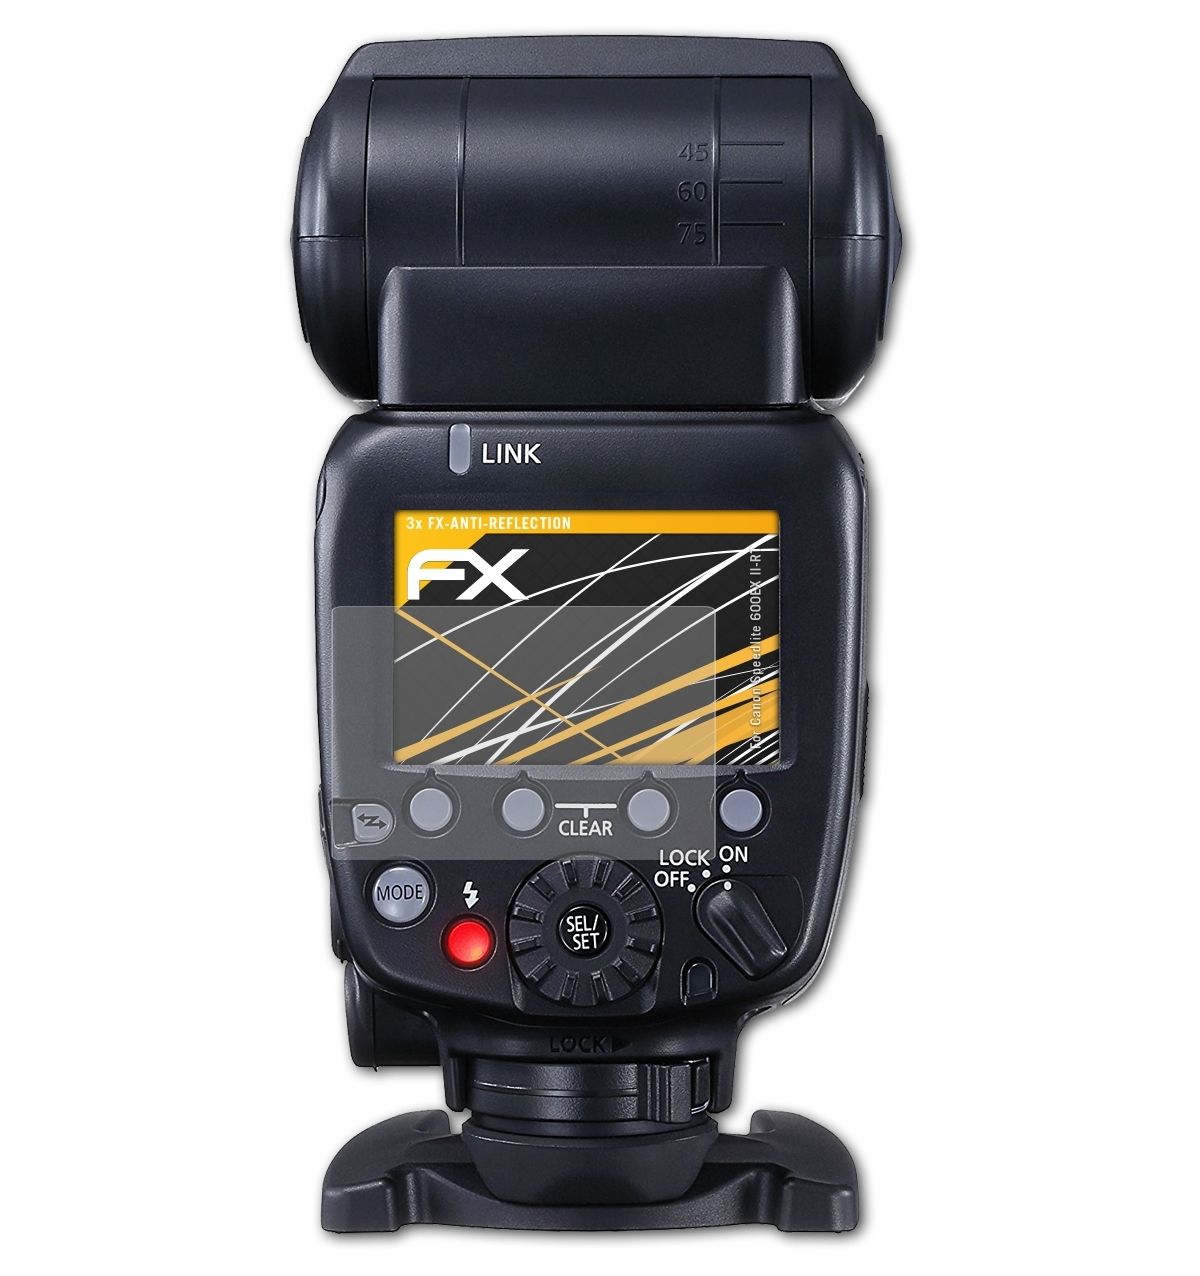 ATFOLIX 3x FX-Antireflex Displayschutz(für 600EX II-RT) Speedlite Canon